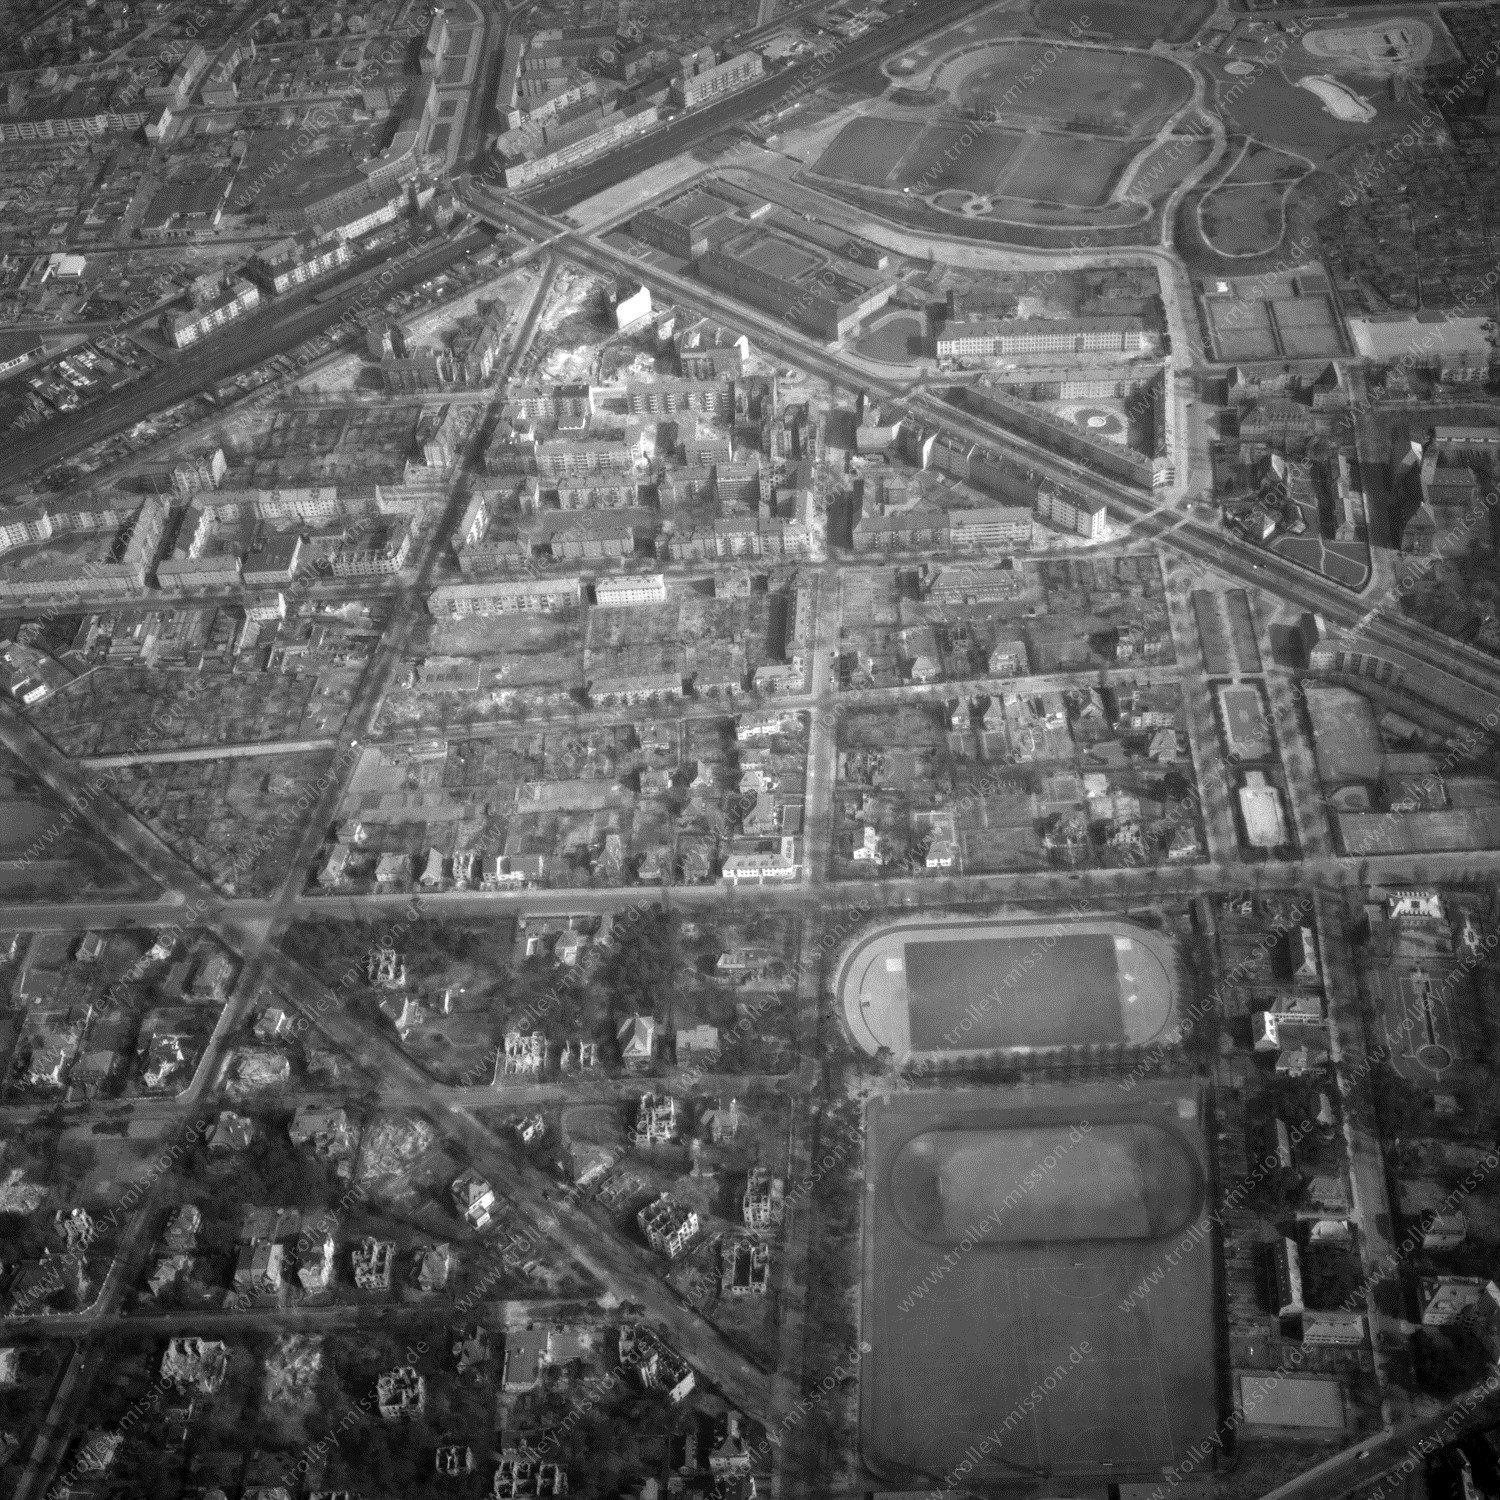 Alte Fotos und Luftbilder von Berlin - Luftbildaufnahme Nr. 03 - Historische Luftaufnahmen von West-Berlin aus dem Jahr 1954 - Flugstrecke Alpha